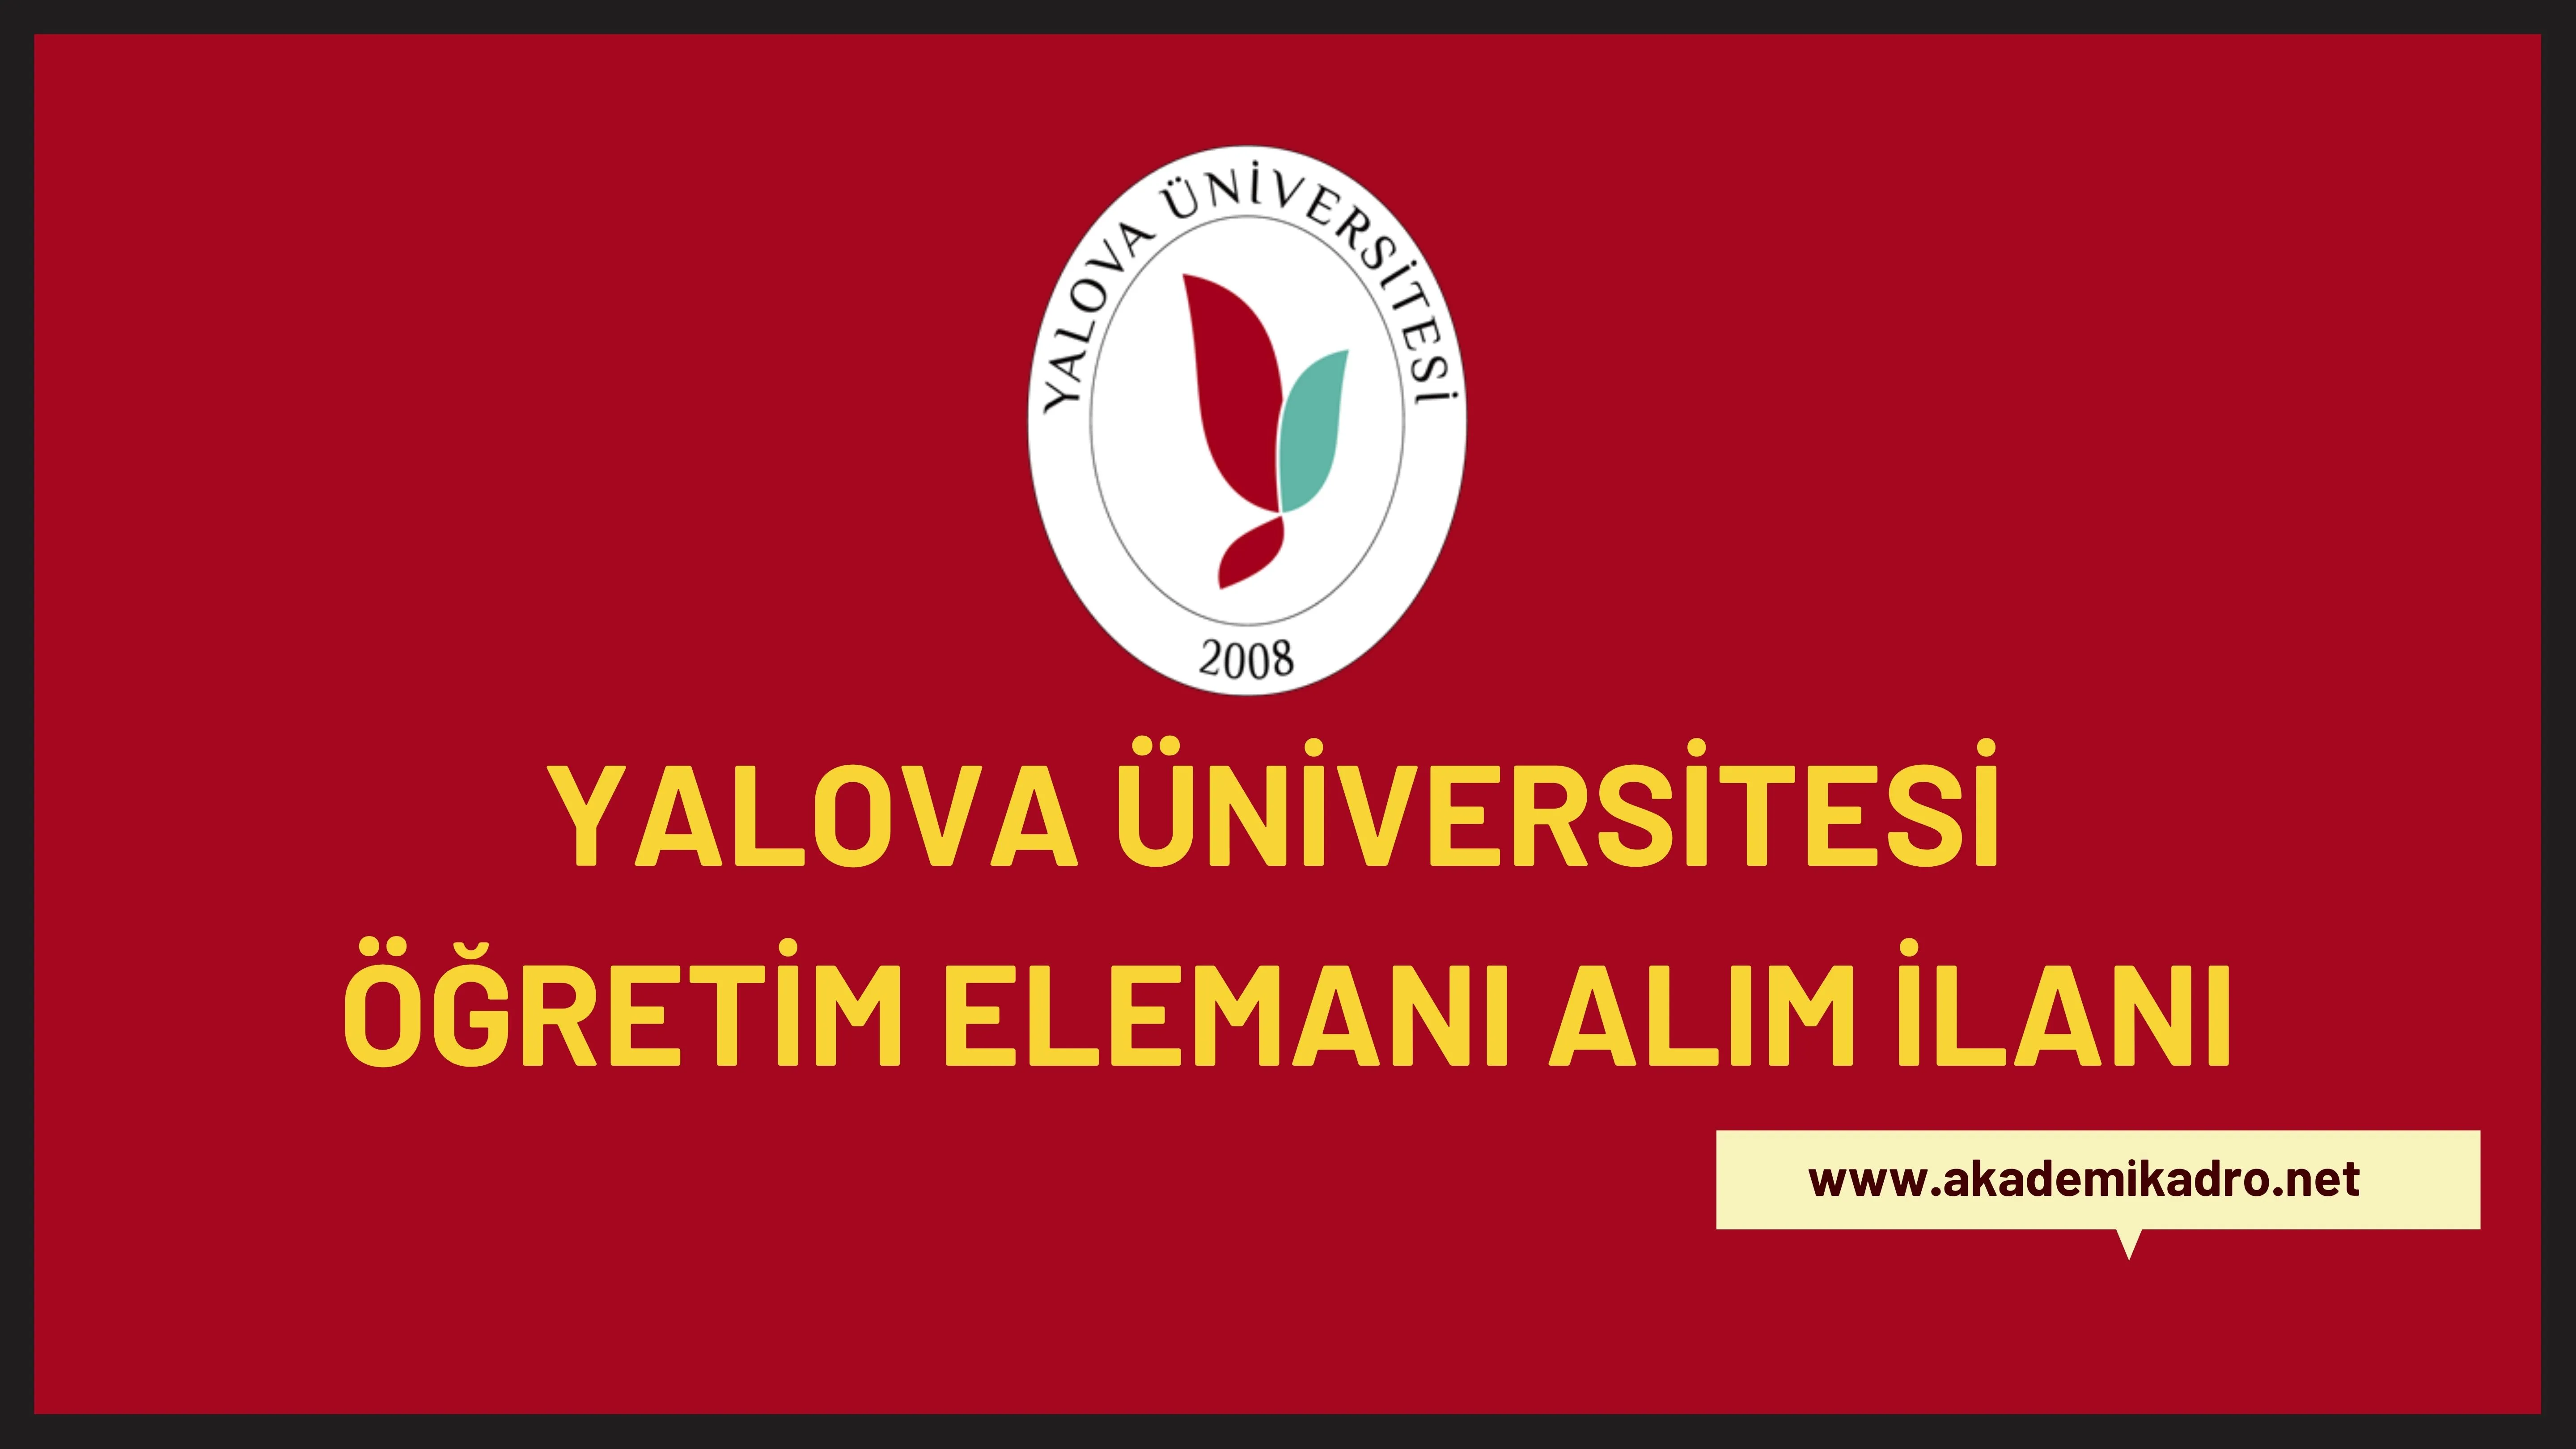 Yalova Üniversitesi 25 Öğretim üyesi ve 5 Öğretim görevlisi alacaktır. Son başvuru tarihi 23 Aralık 2022